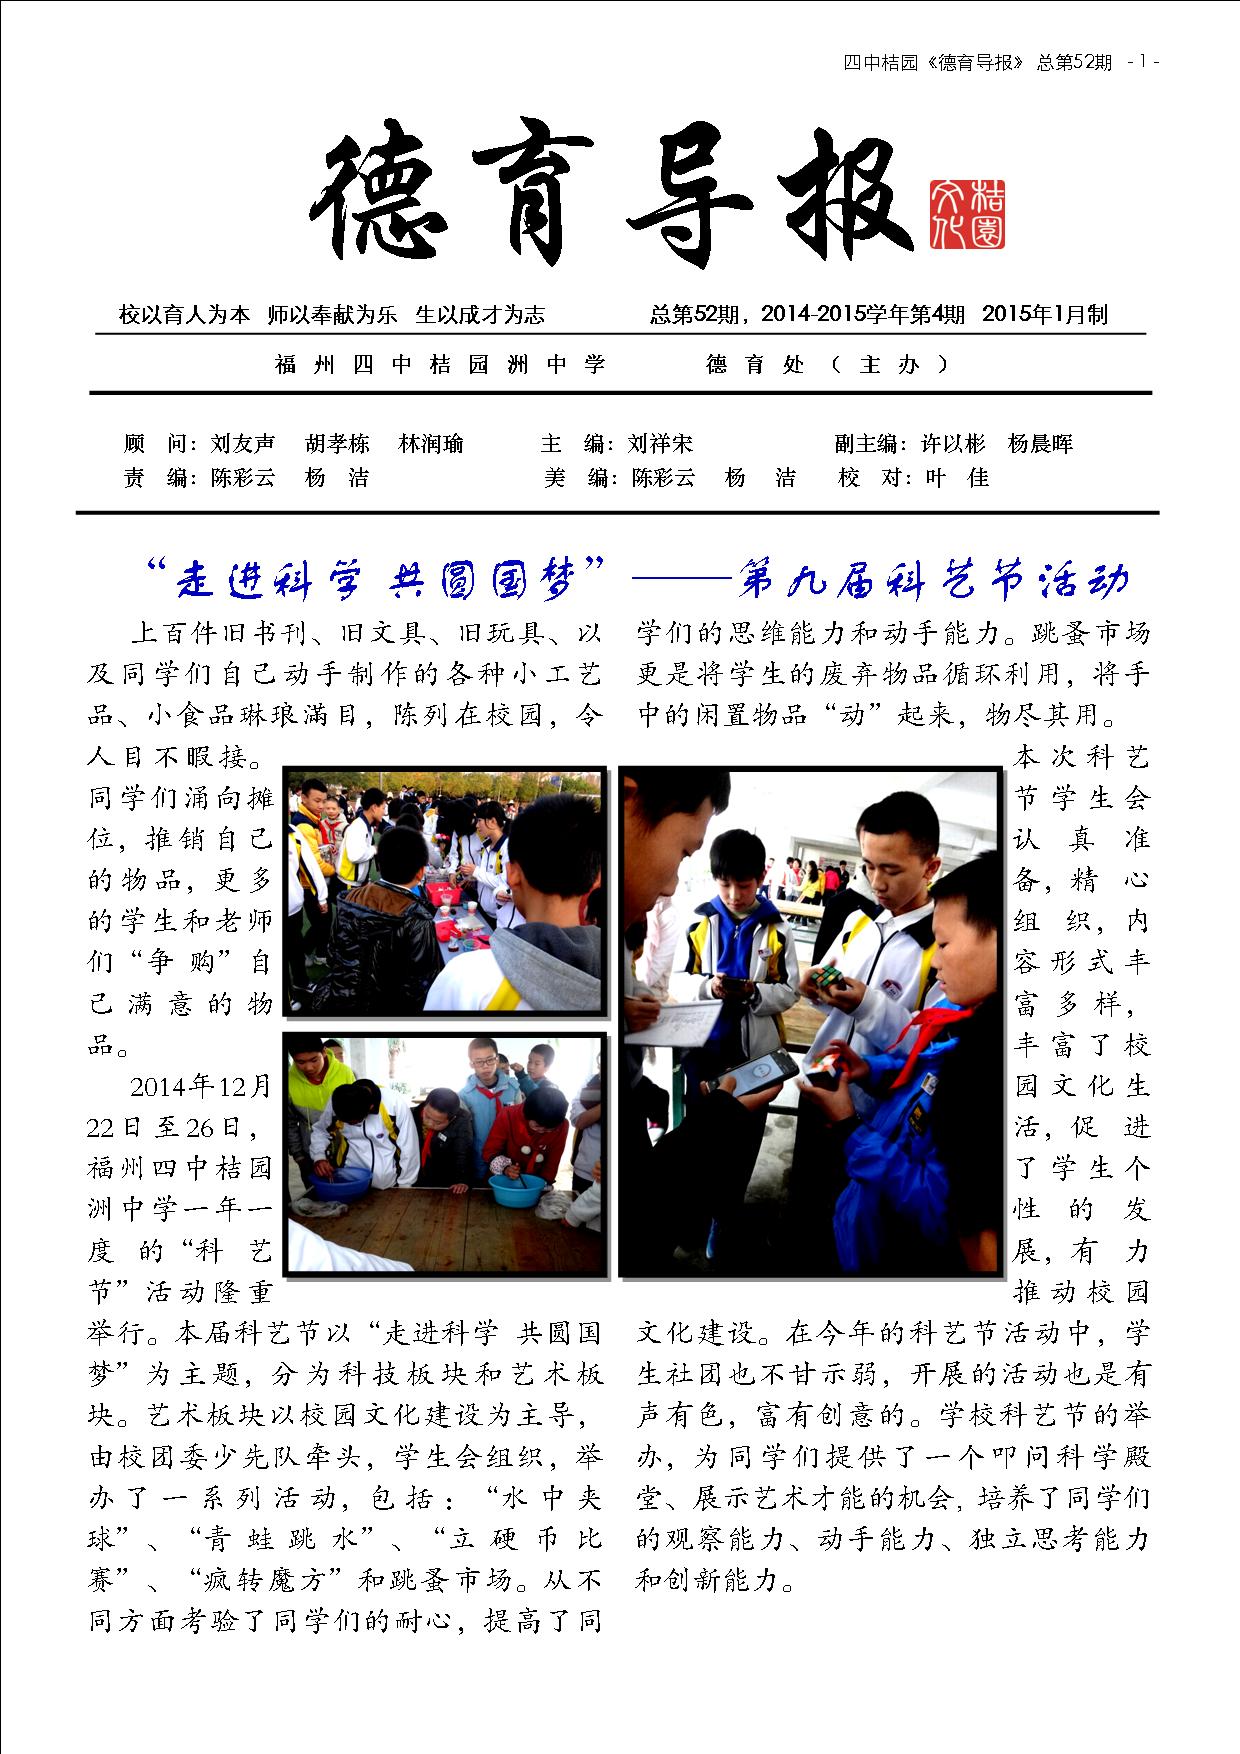 德育导报 NO.52  第6卷，第4期  2015年1月 (1).jpg